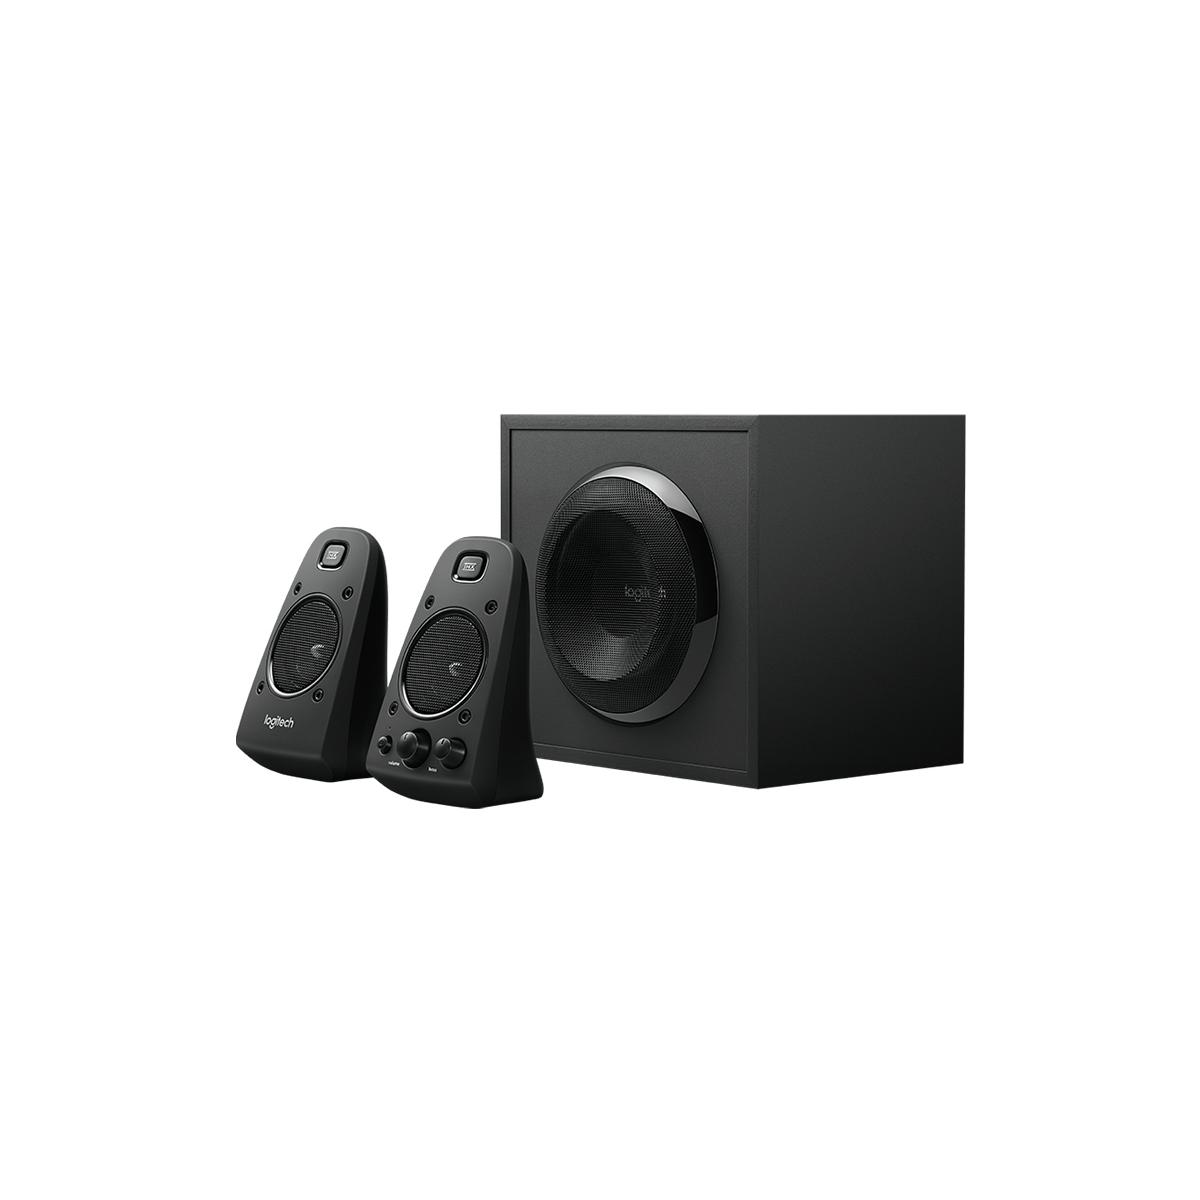 Logitech Speaker System Z623 - Stores